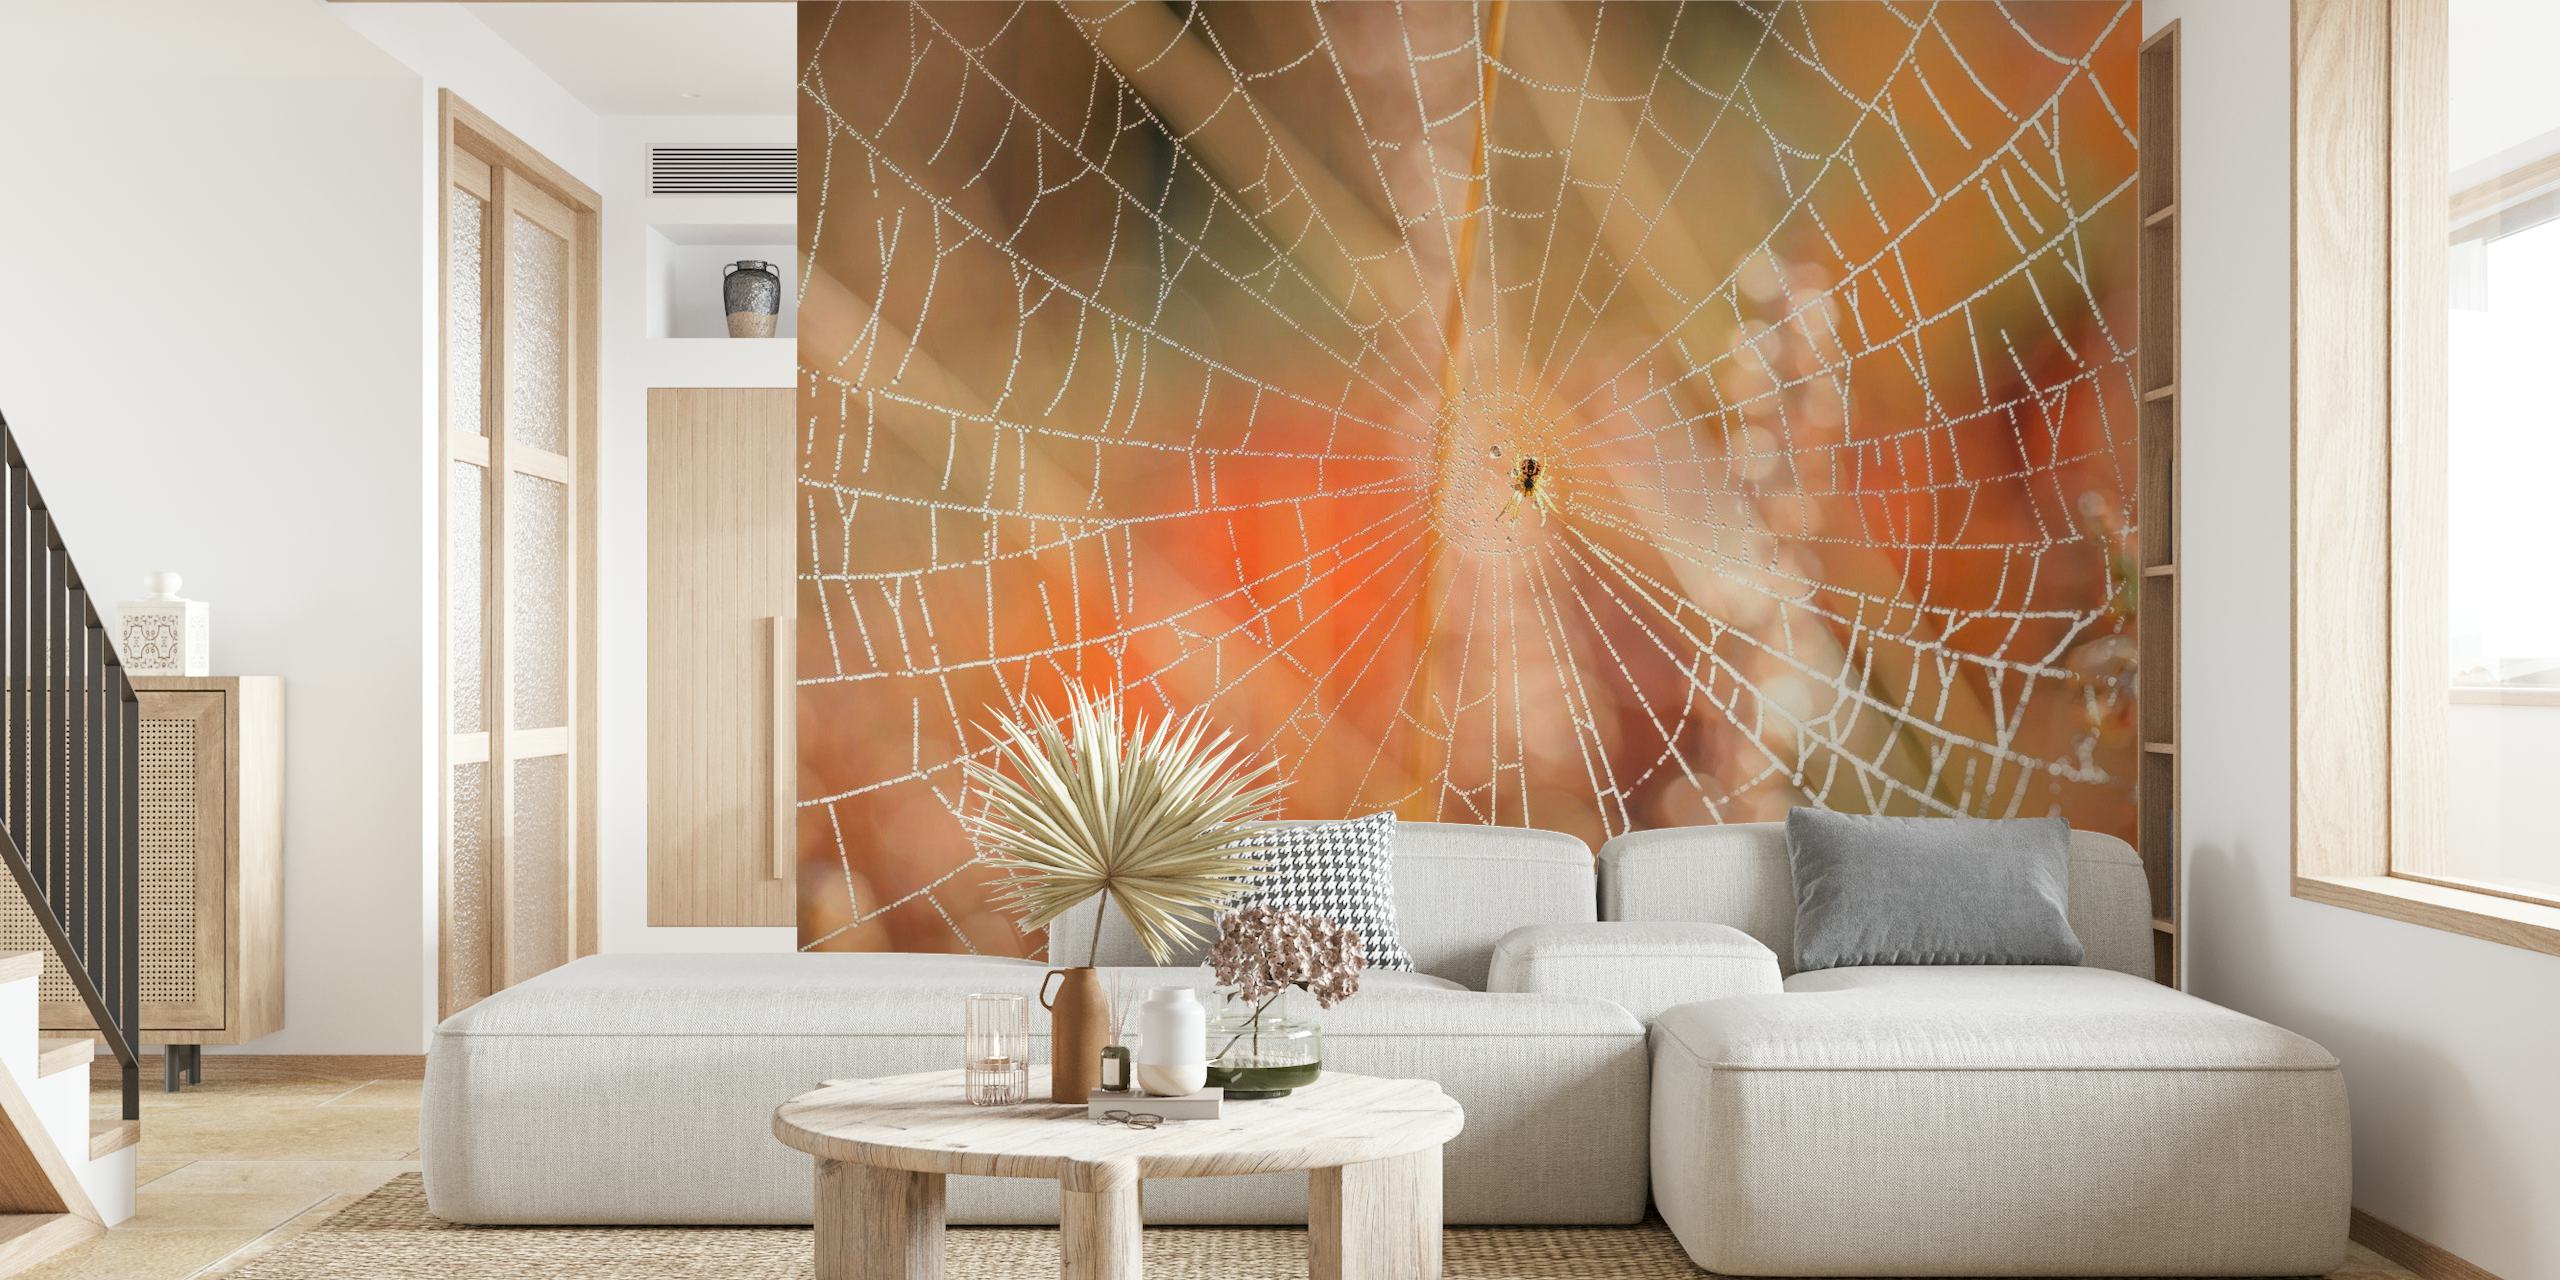 Ingewikkelde spinnenwebmuurschildering met ochtenddauw